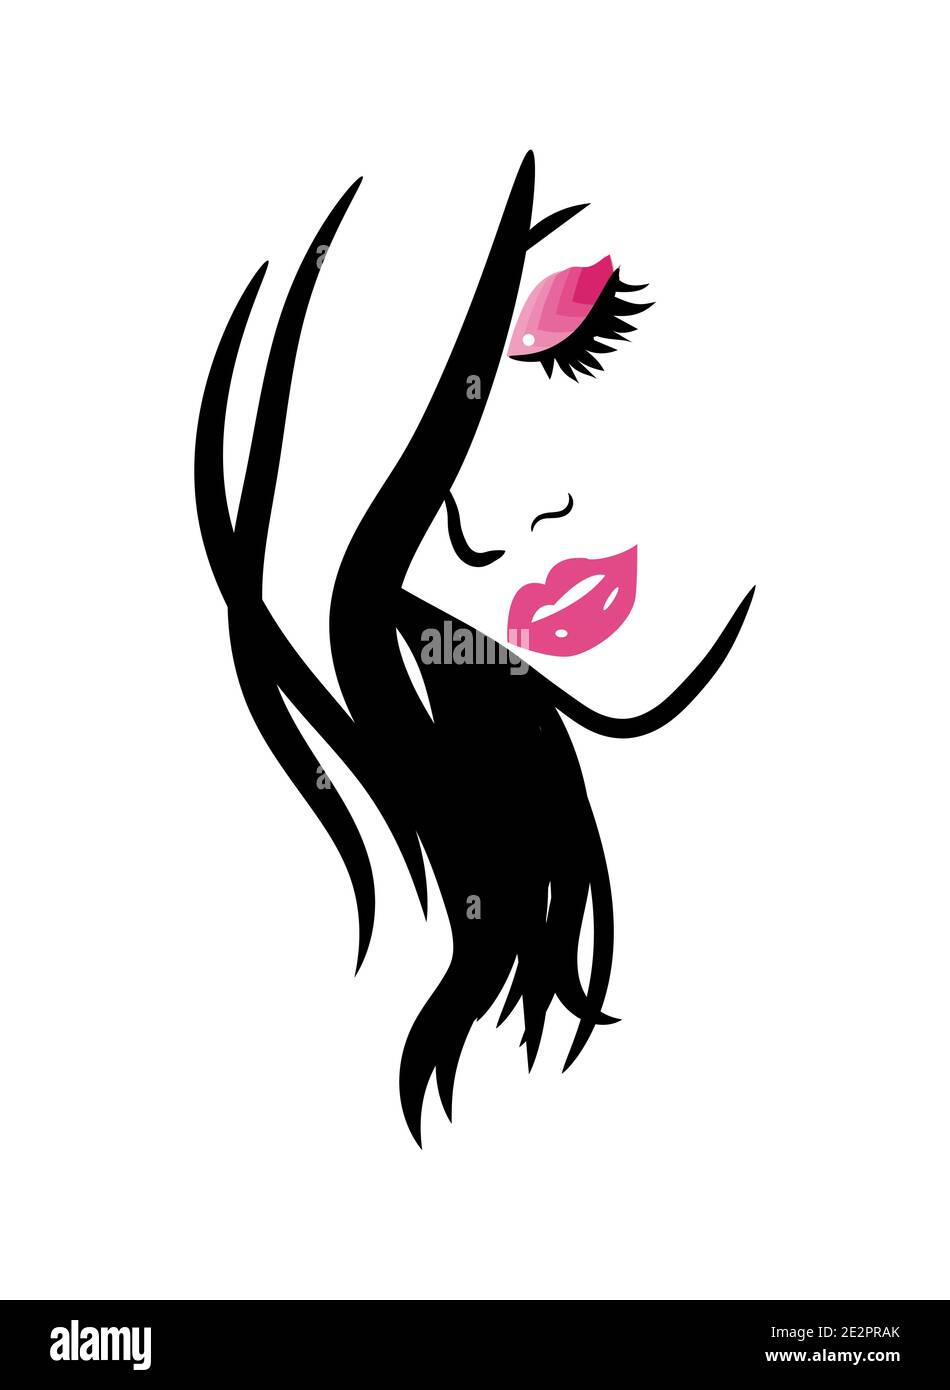 Make Up Logo PNG Images, Make Up Logo Clipart Free Download